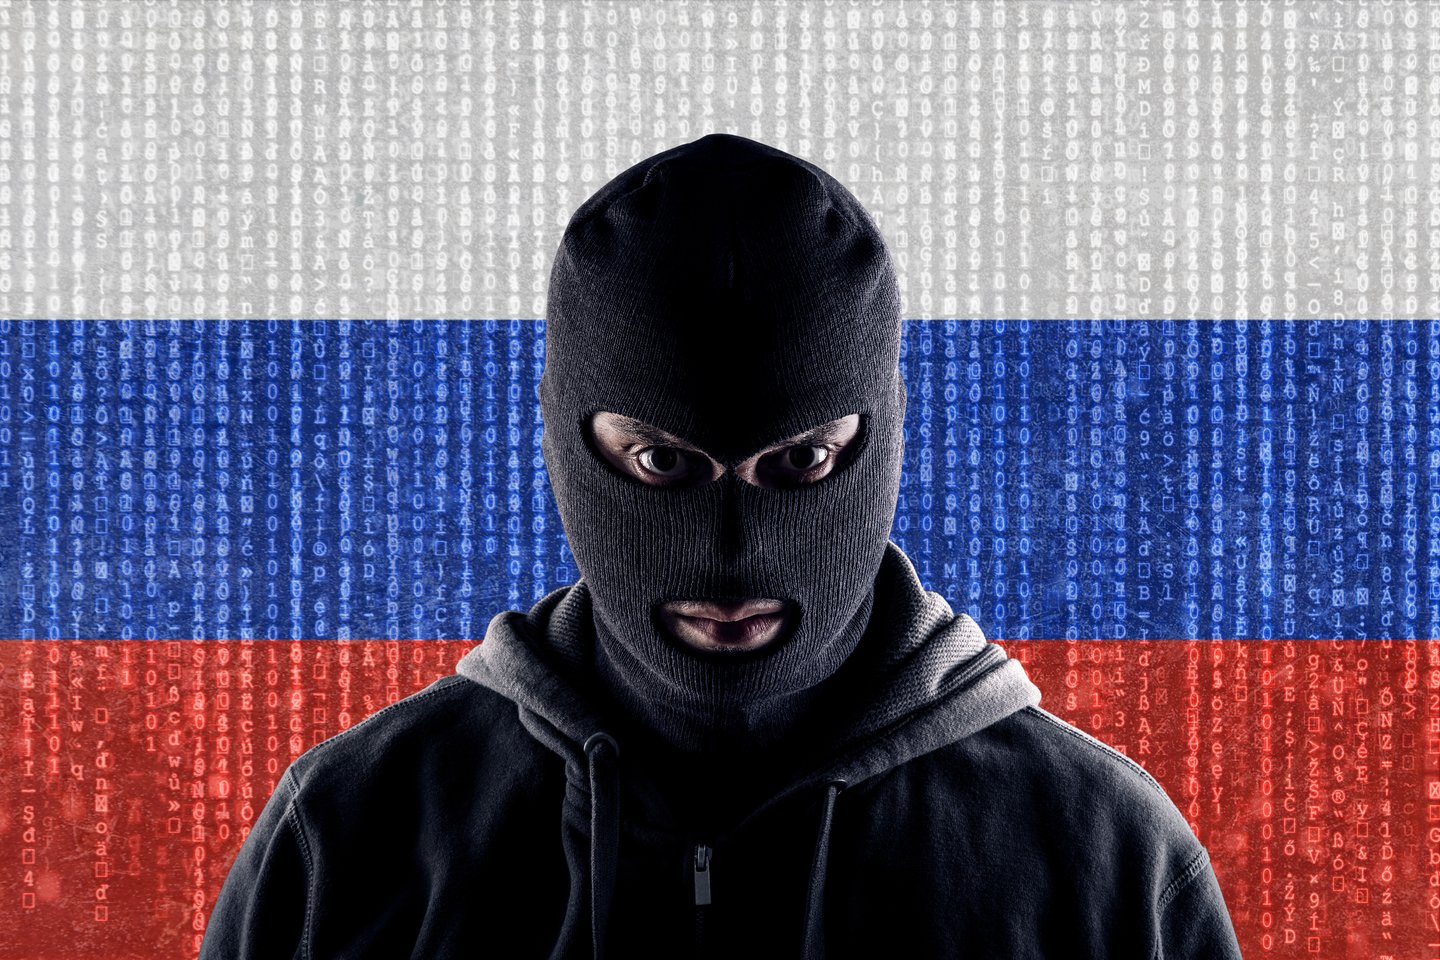  Atlikus tyrimą paaiškėjo, kad masinės, nelabai koordinuotos kibernetinės atakos organizuotos iš Rusijos.<br> 123rf iliustr.